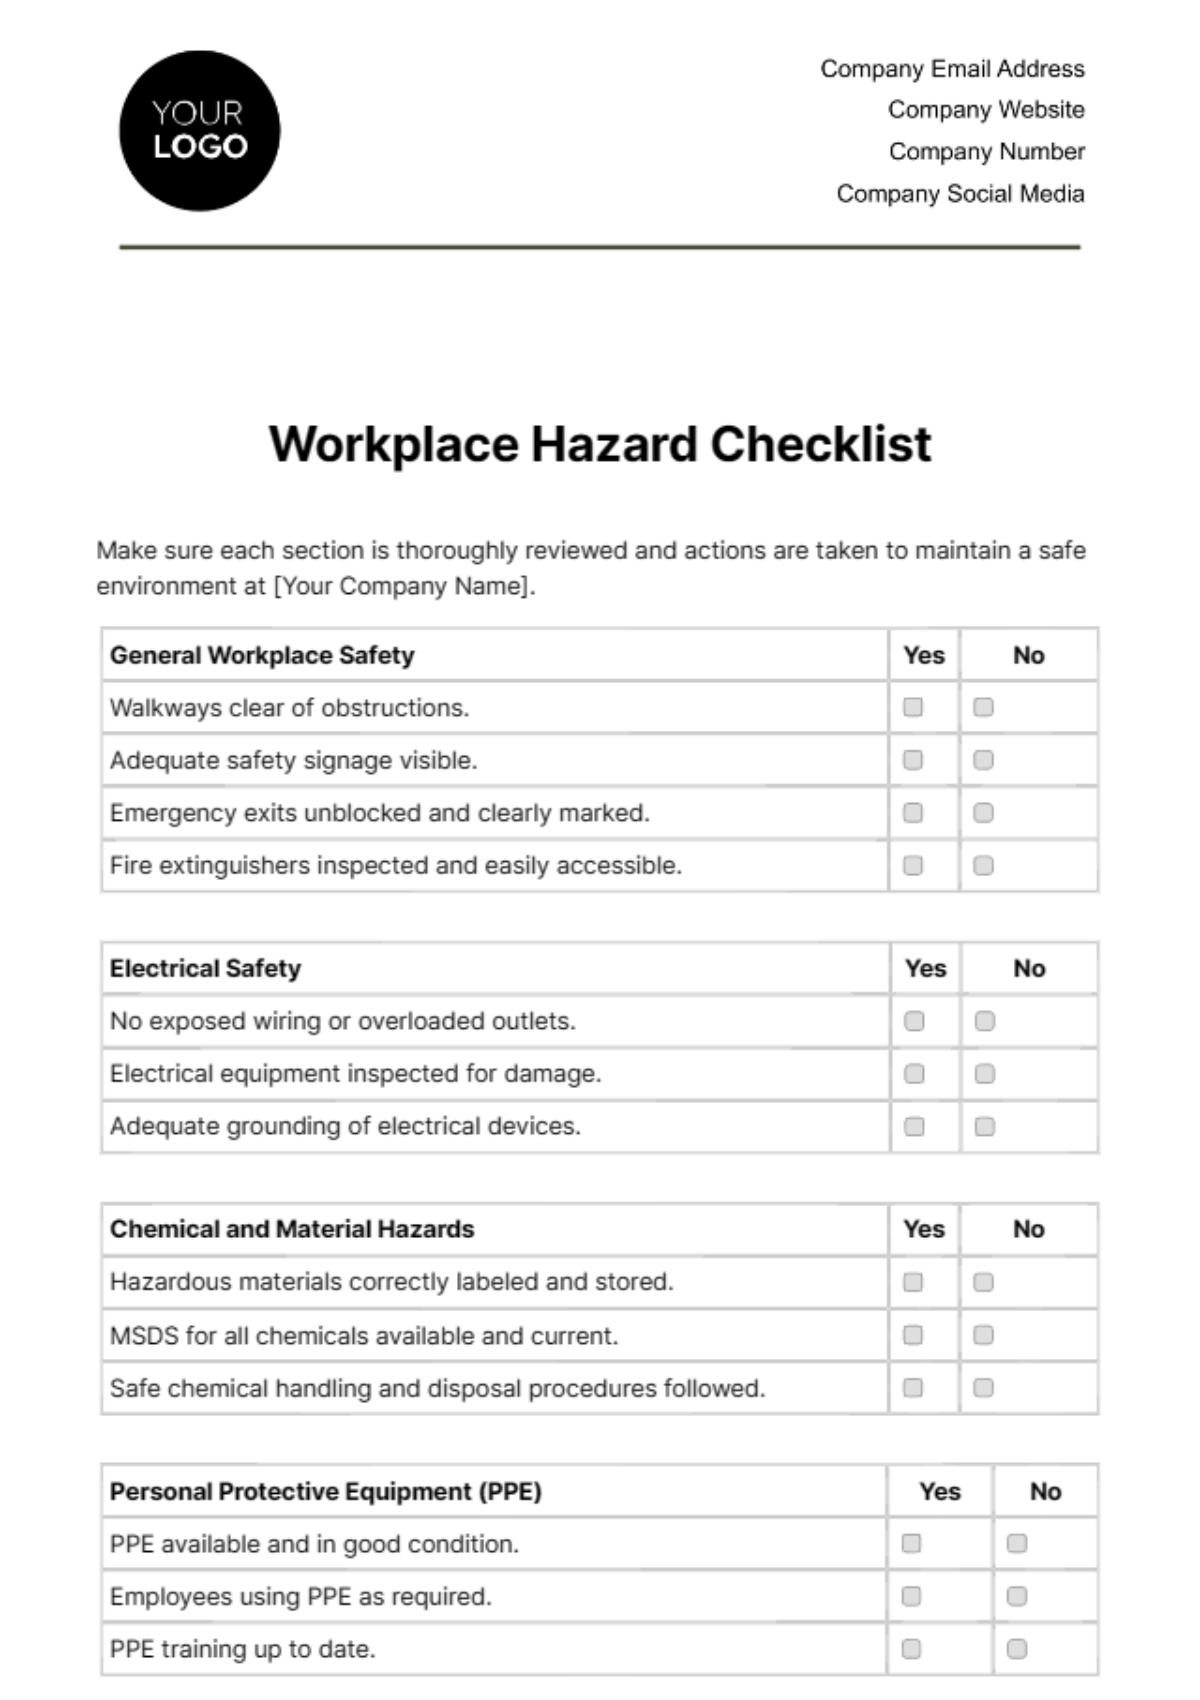 Workplace Hazard Checklist Template